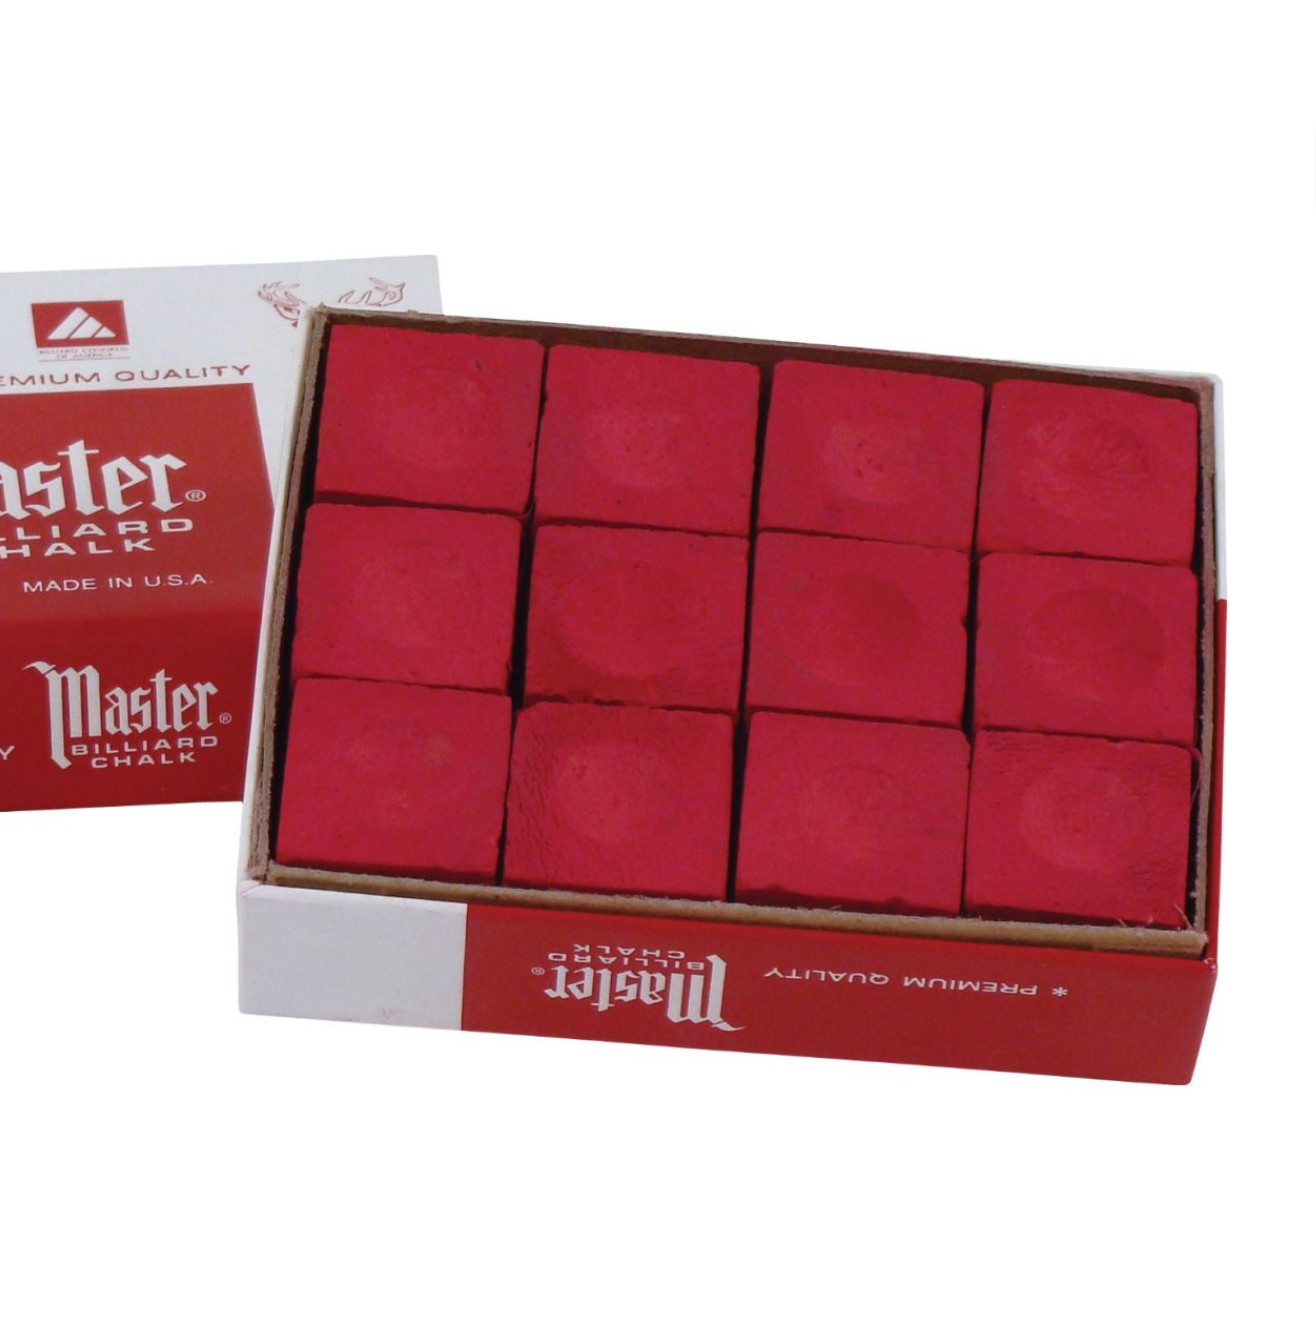 Master Billiard Chalk, Box of 12